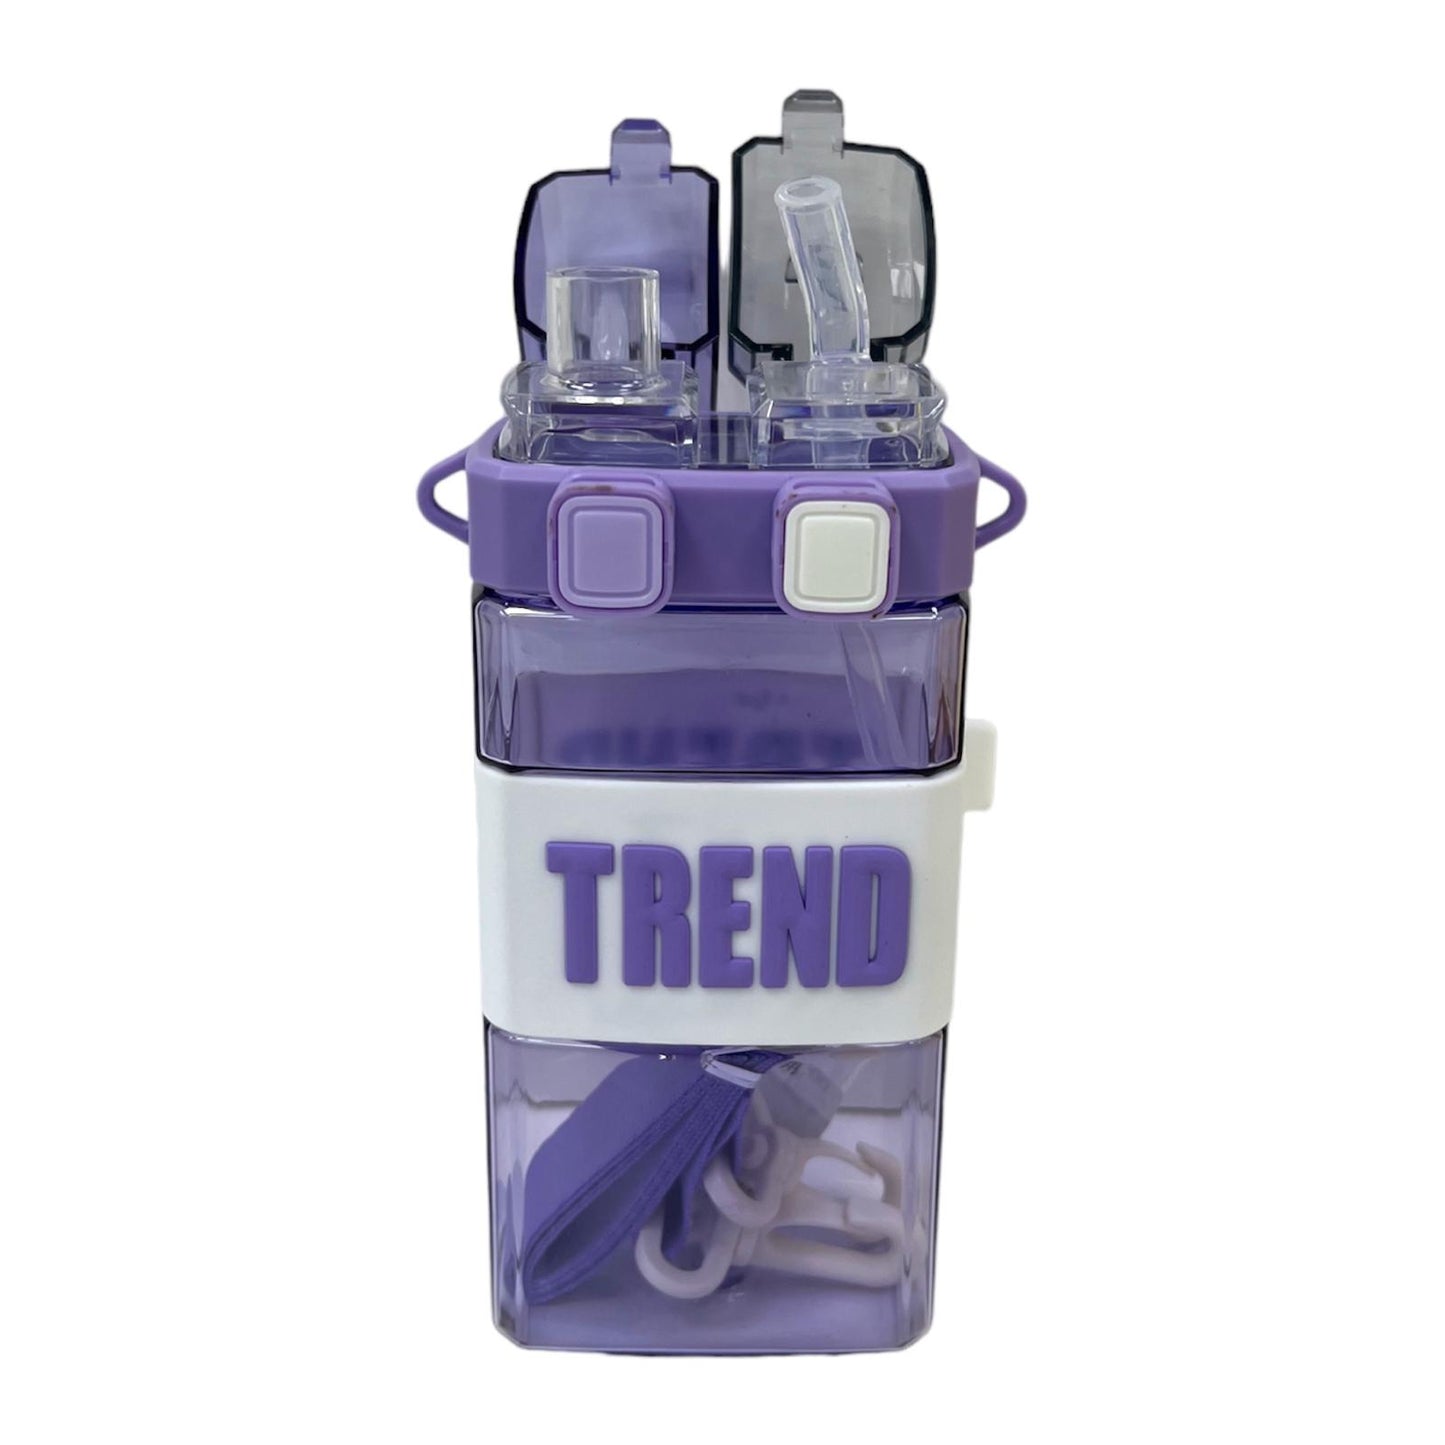 Trend Water Bottle || مطارة ماء ترند